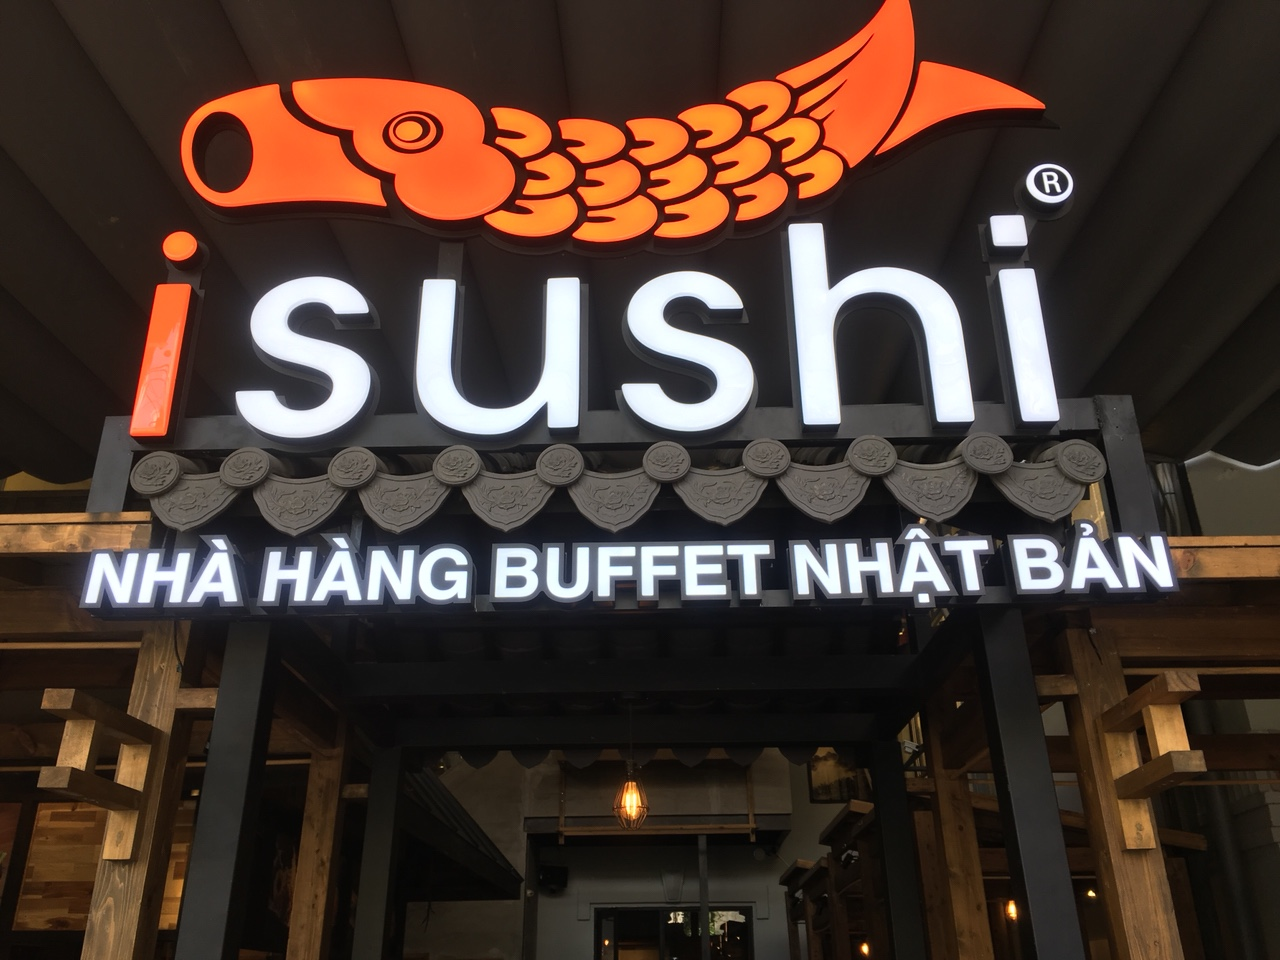 biển quảng cáo nhà hàng isushi